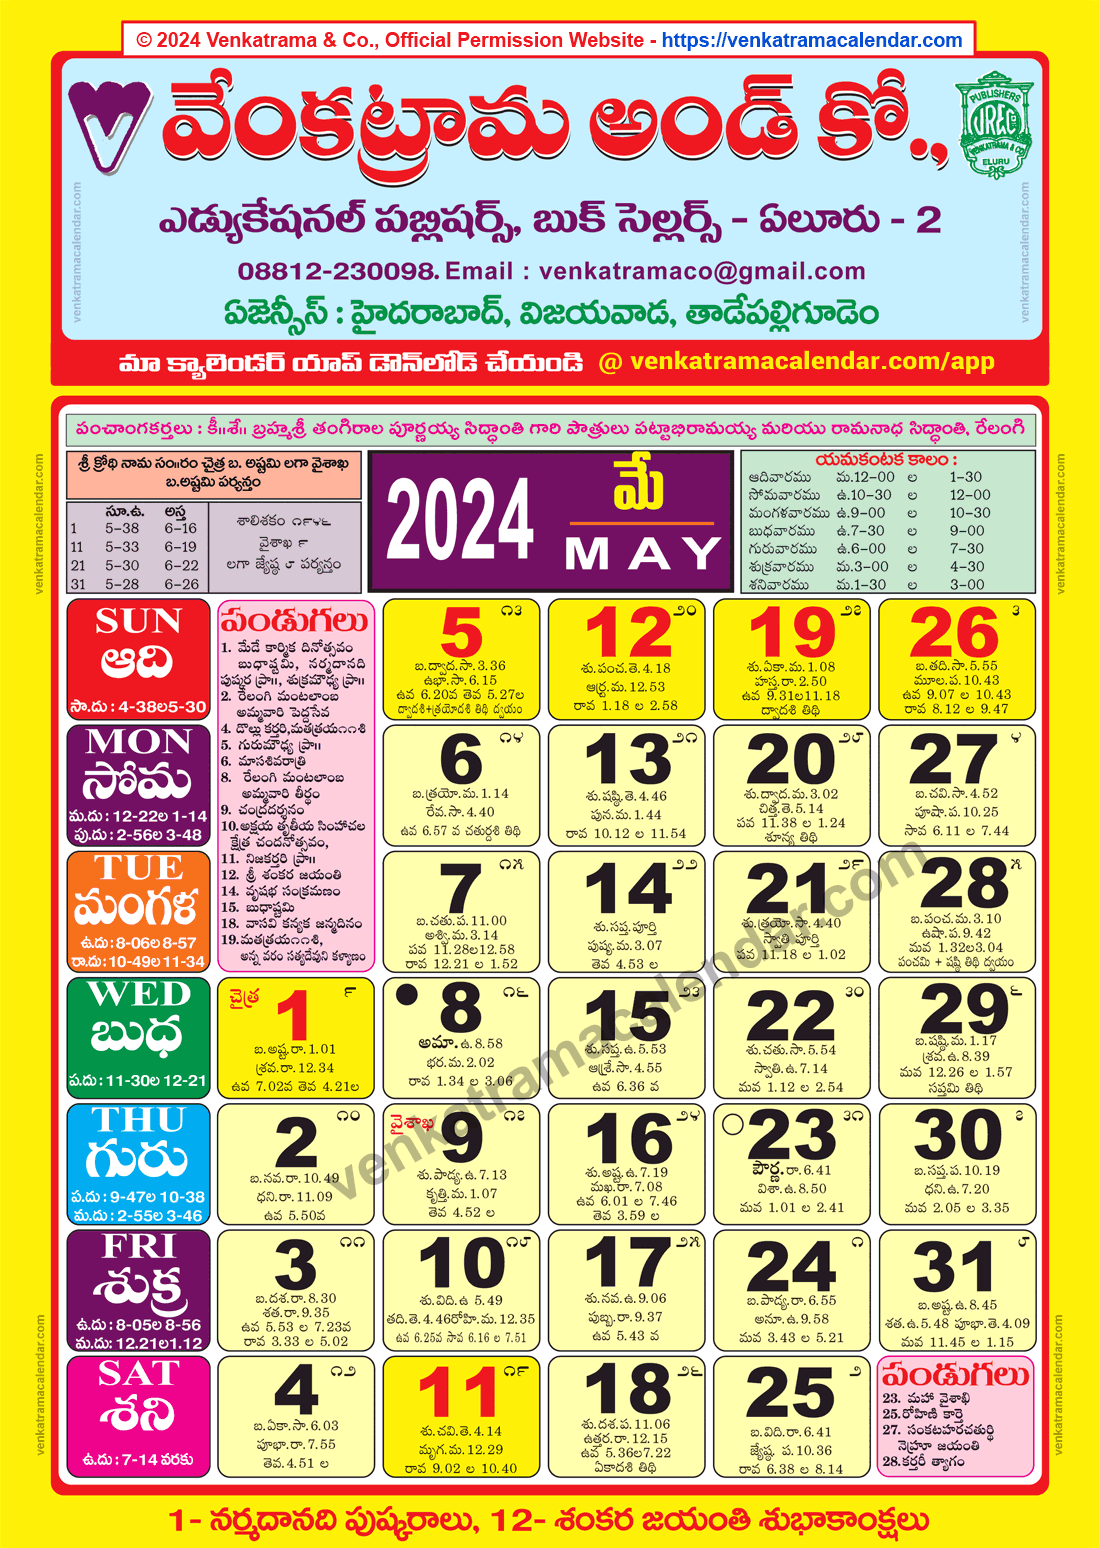 Venkatrama Calendar 2024 May Venkatrama Telugu Calendar 2024